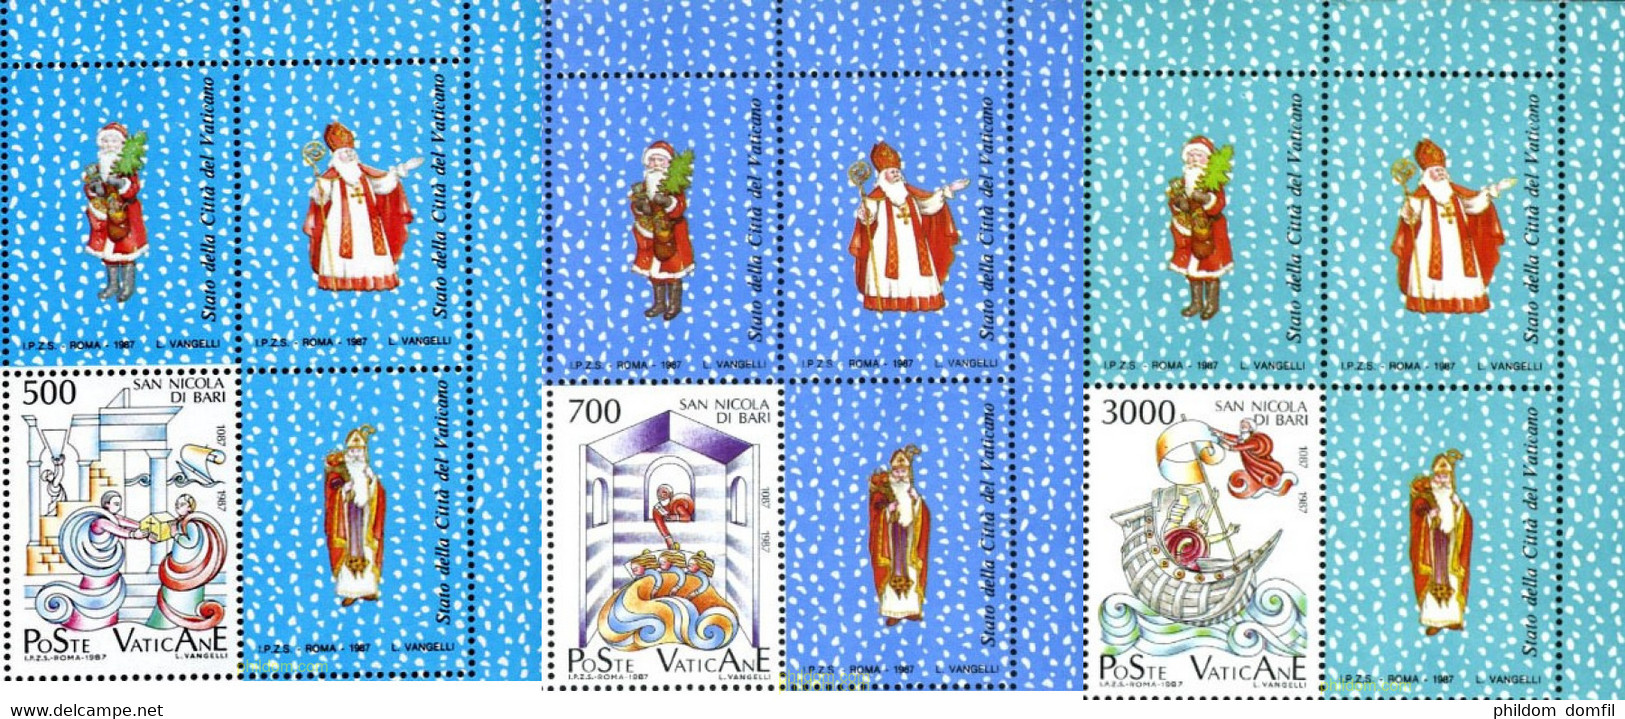 686404 MNH VATICANO 1987 9 CENTENARIO DE LA TRANSFERENCIA DEL RELICARIO DE SAN NICOLAS DE MYRE A BARI - Used Stamps